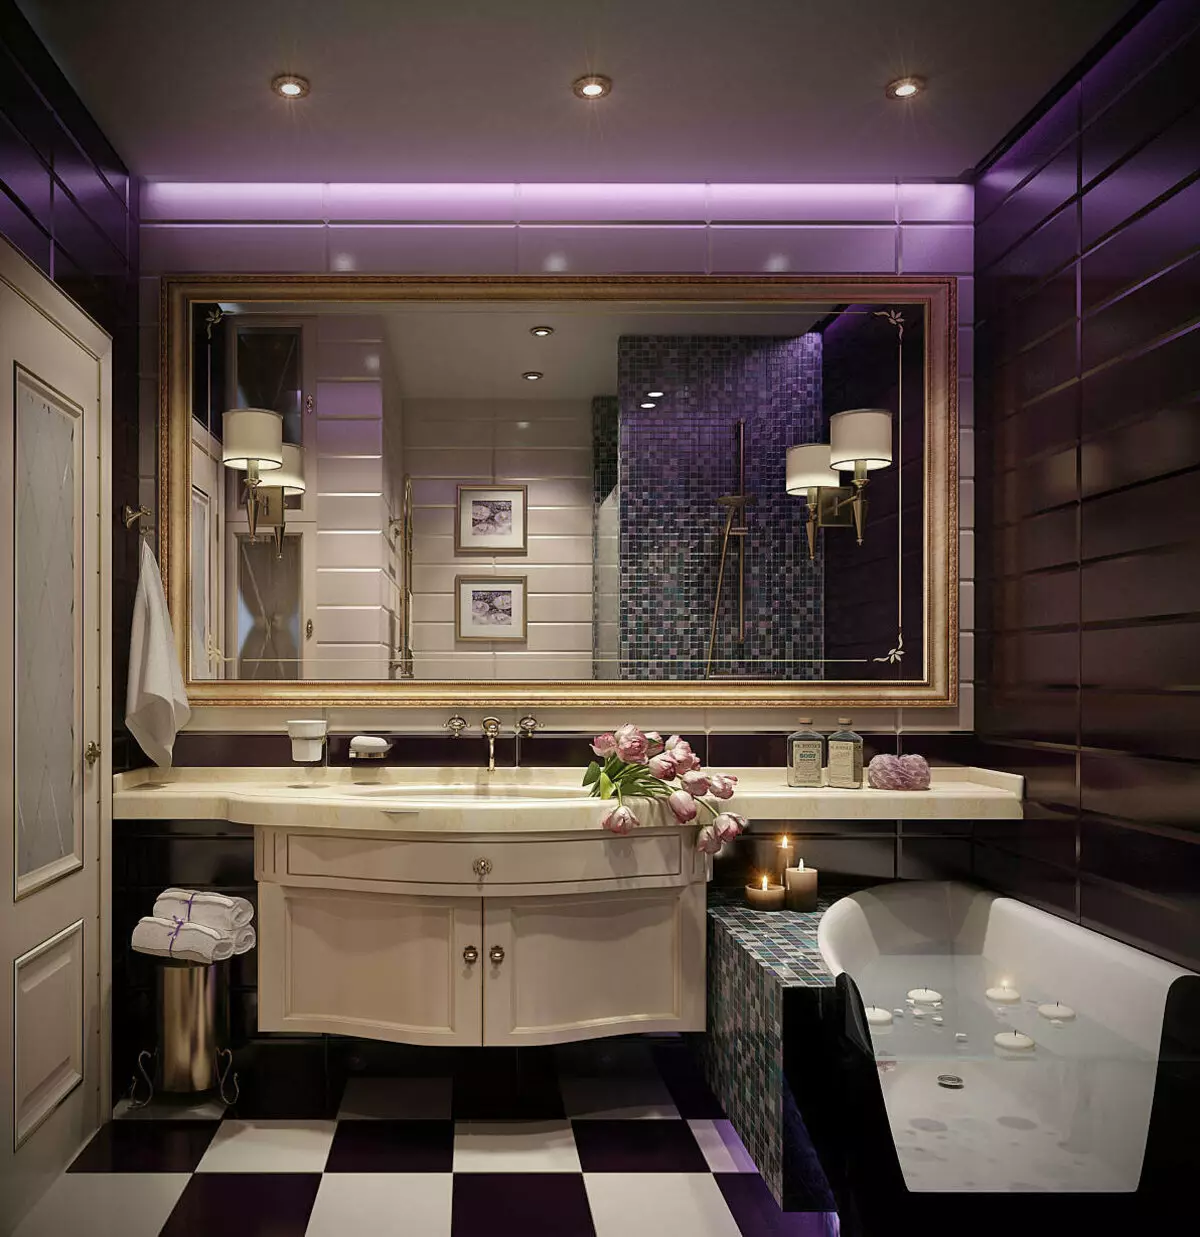 Baño de estilo Art Deco (39 fotos): Decoración del baño. Hermosos ejemplos de interior. 21443_14